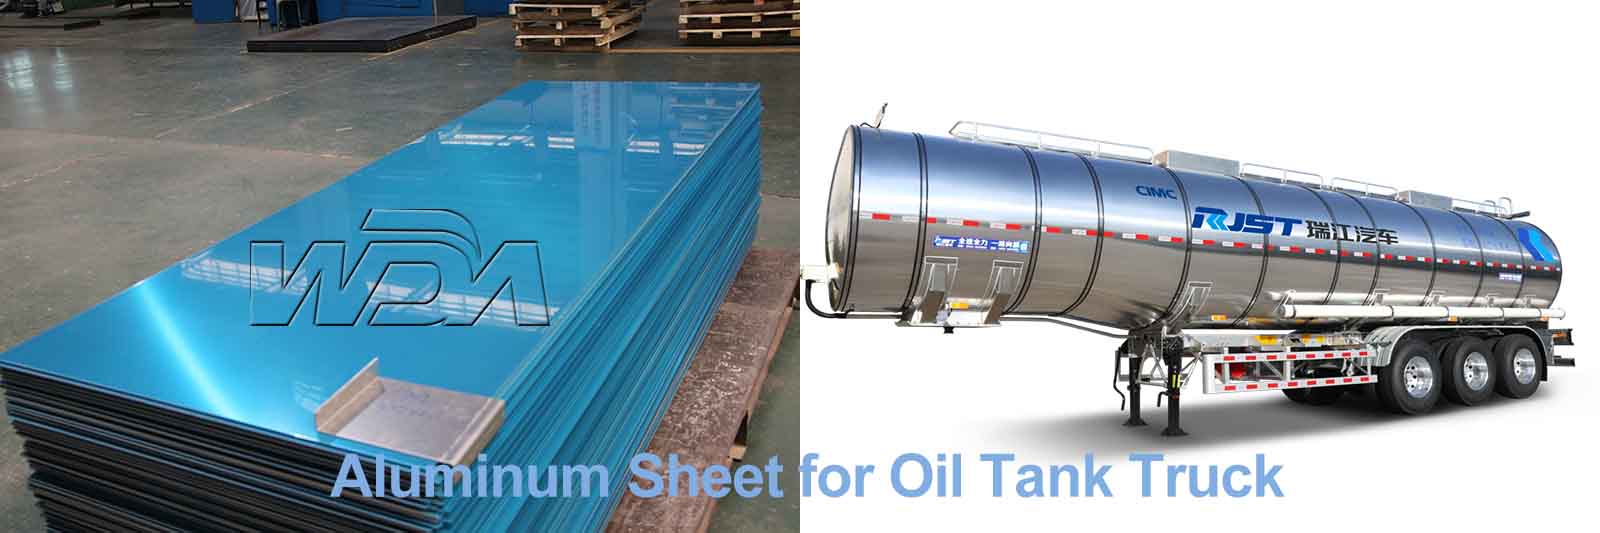 aluminum sheet for oil tank truck